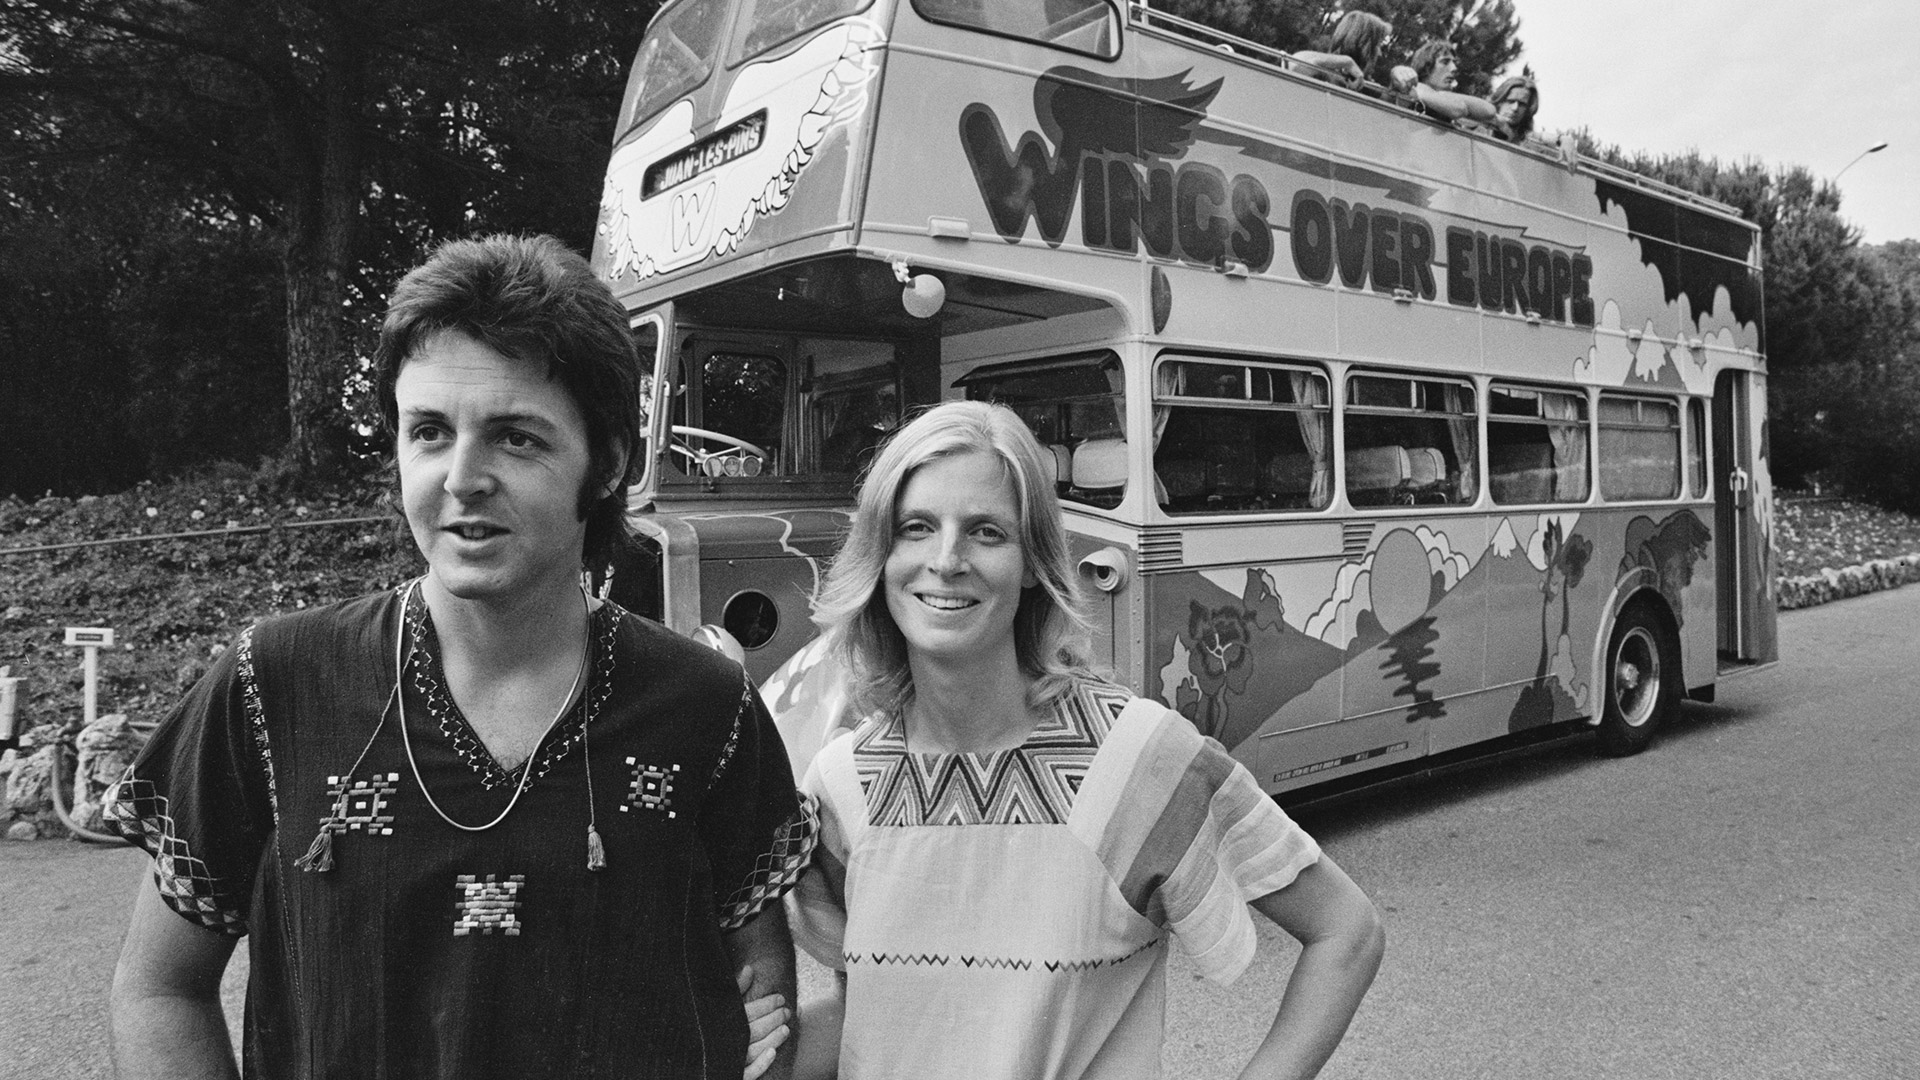 Paul y Linda de gira en 1972 con los Wings. Paul formó una banda e incluyó a su esposa pese a las quejas de los críticos. (Photo by Reg Lancaster/Daily Express/Hulton Archive/Getty Images)